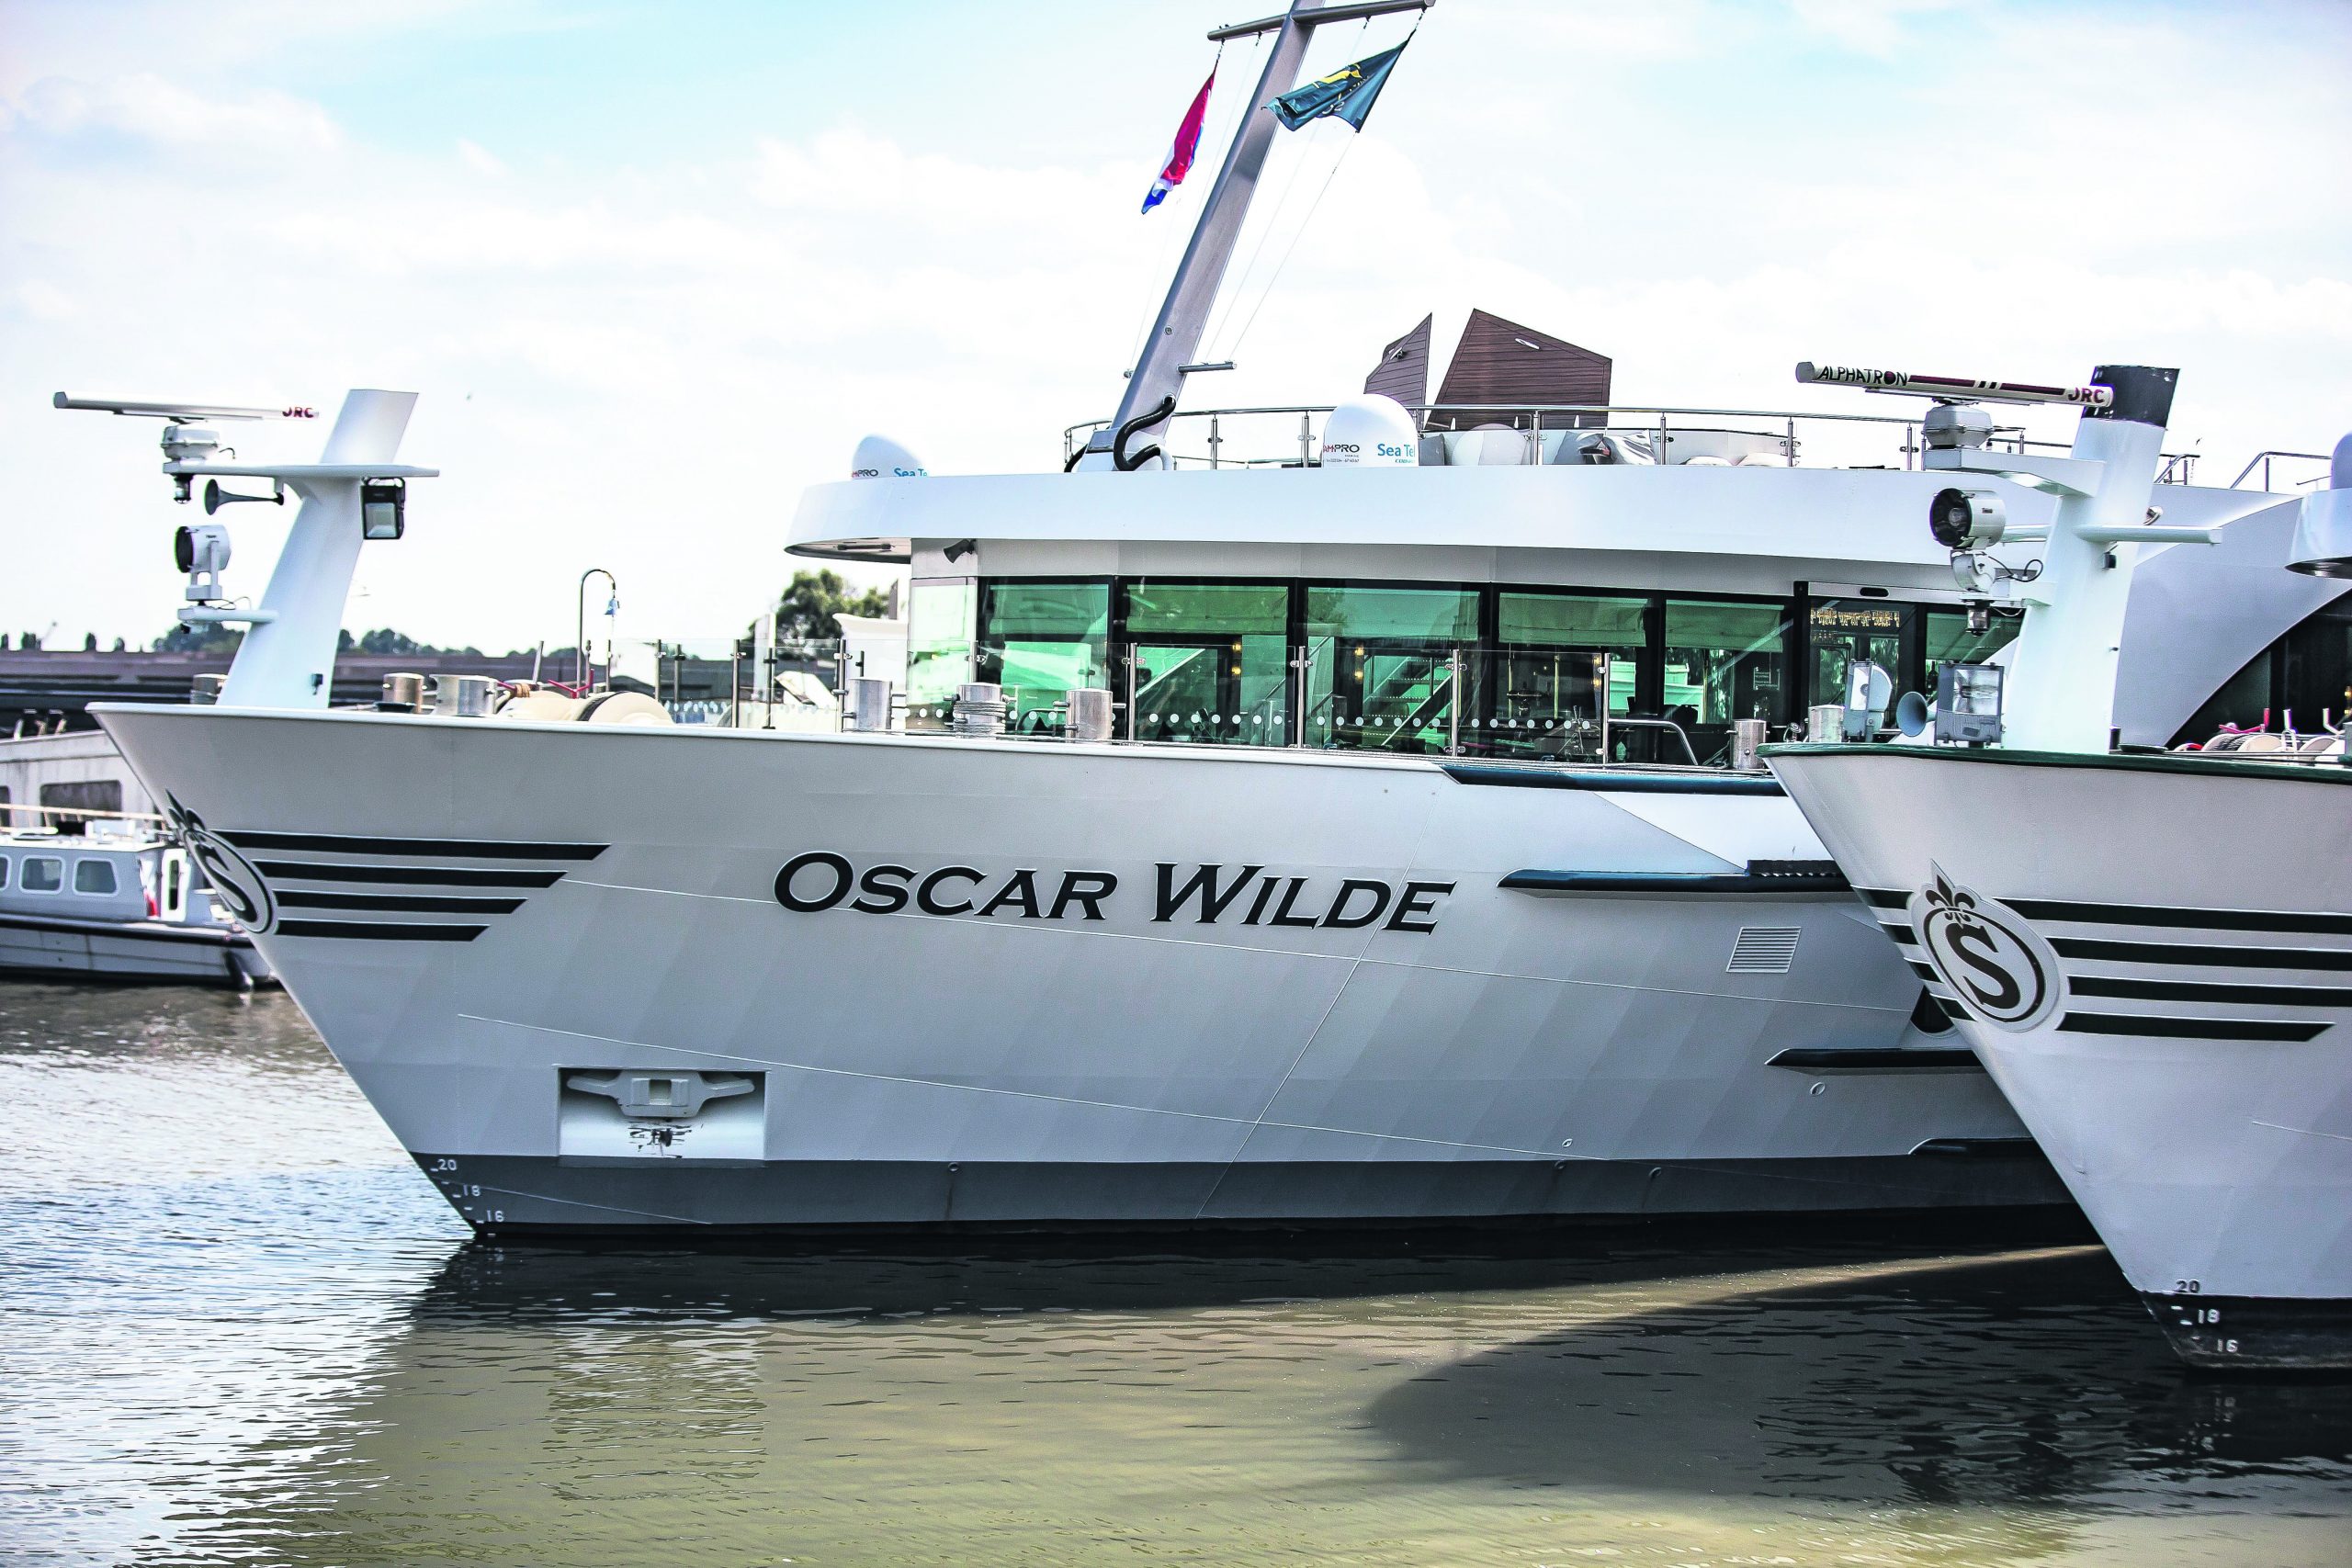 De Oscar Wilde en een zusterschip van Scylla in corona lockdown. (Foto Scylla)